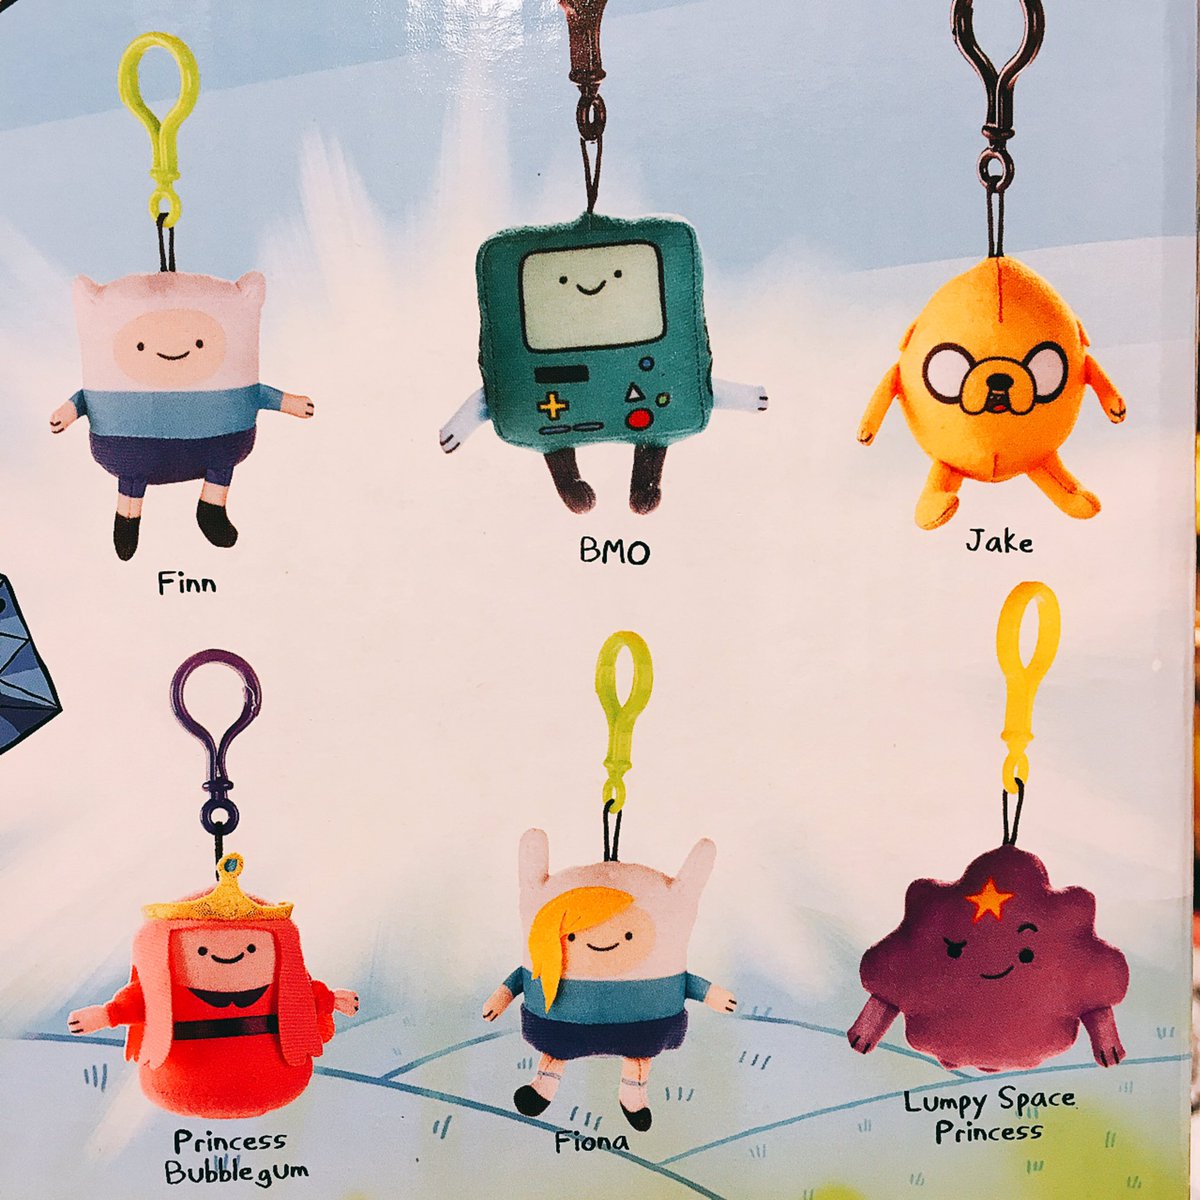 ヴィレッジヴァンガード静岡パルコ En Twitter Adventure Time かわいいかわいい ランダムマスコット入荷 ちょ かわいい 無理 カバンにつける ジェイクとフィンと一緒にアドベンチャータイムする コブコブ星のプリンセスもいるよ